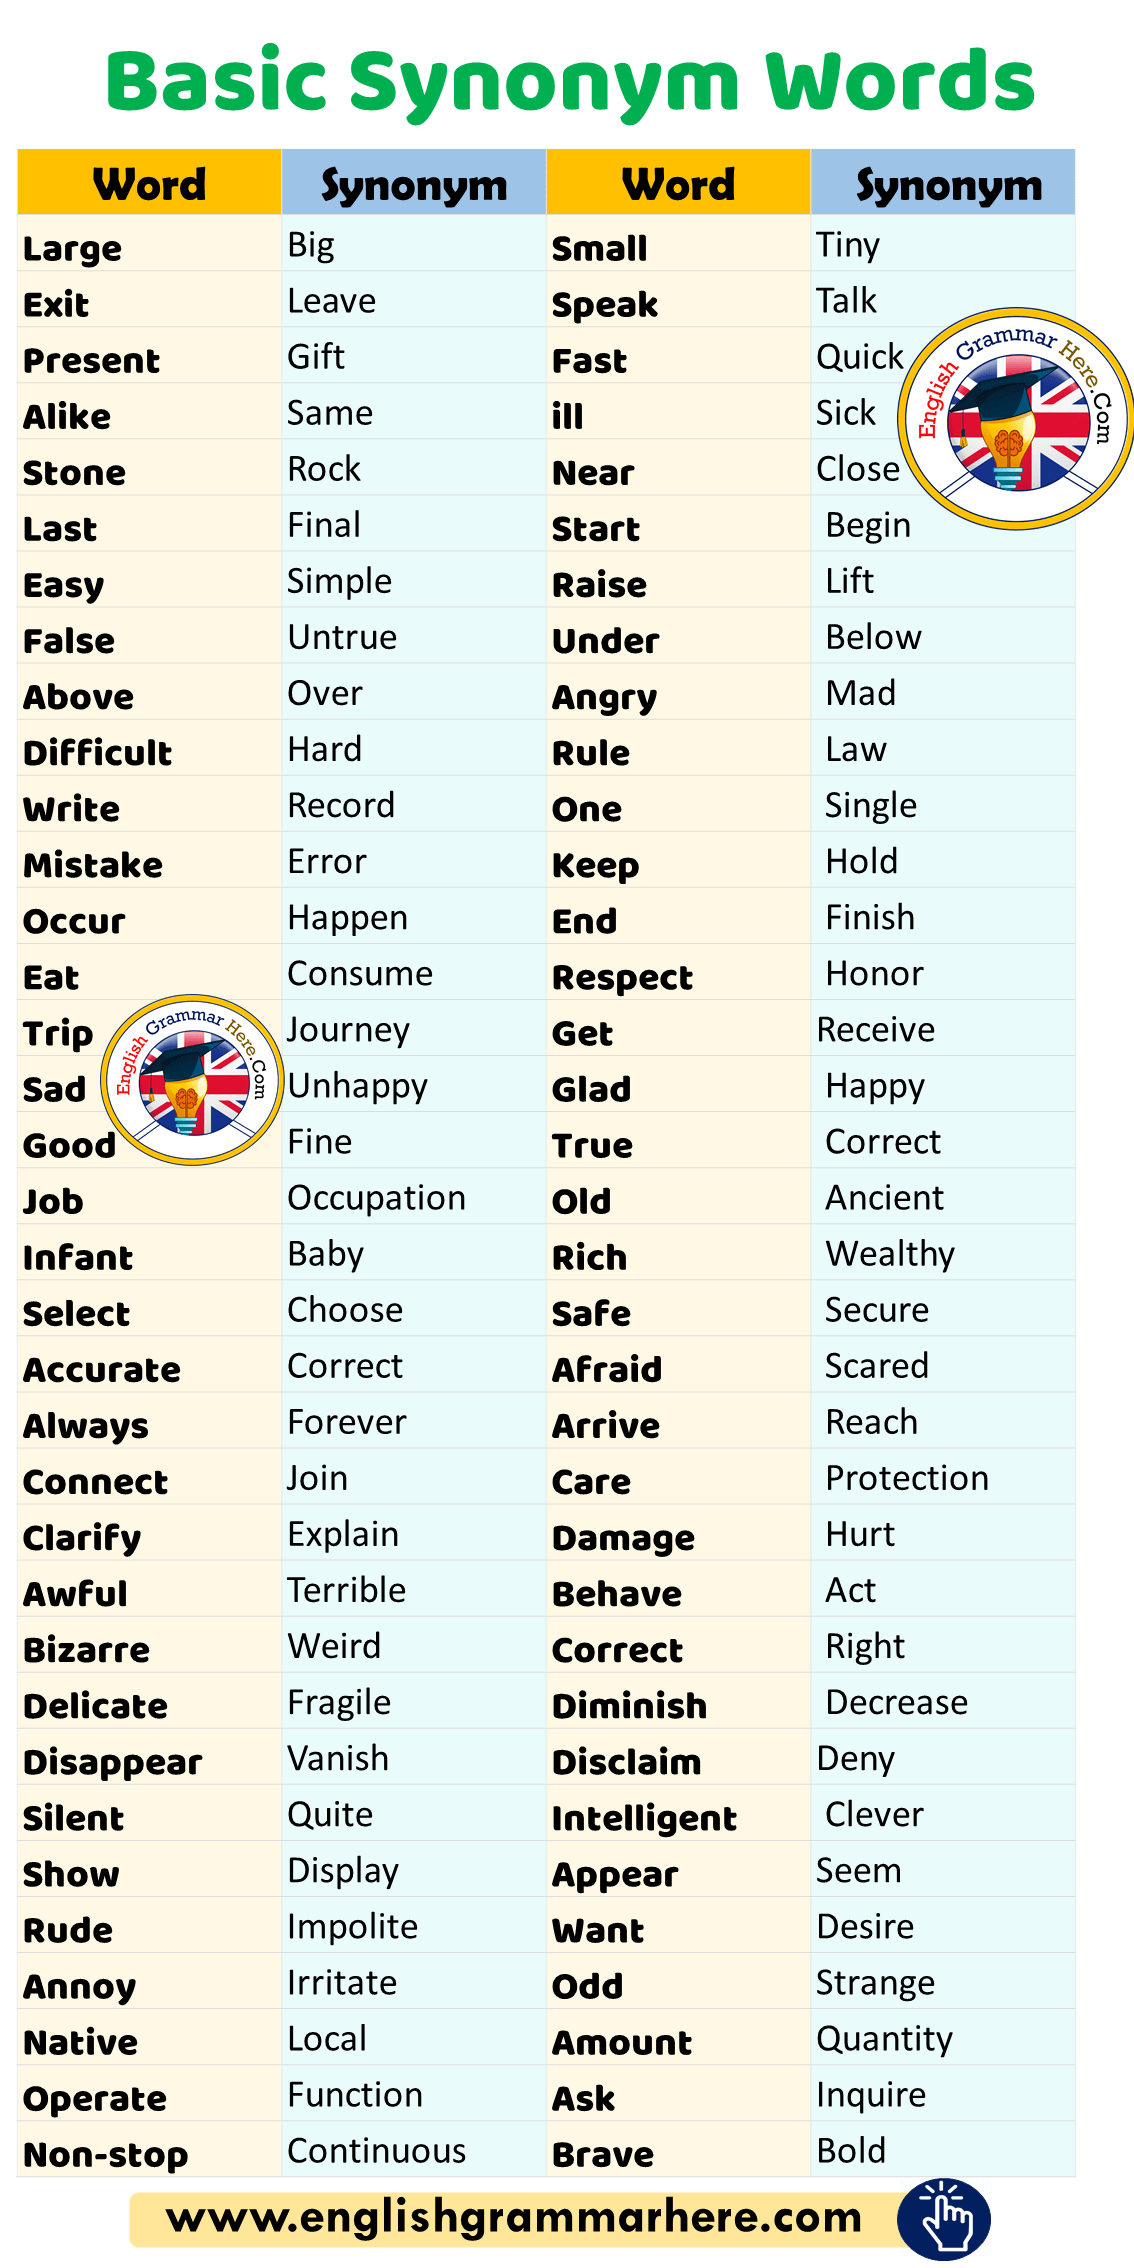 Basic Synonym Words in English